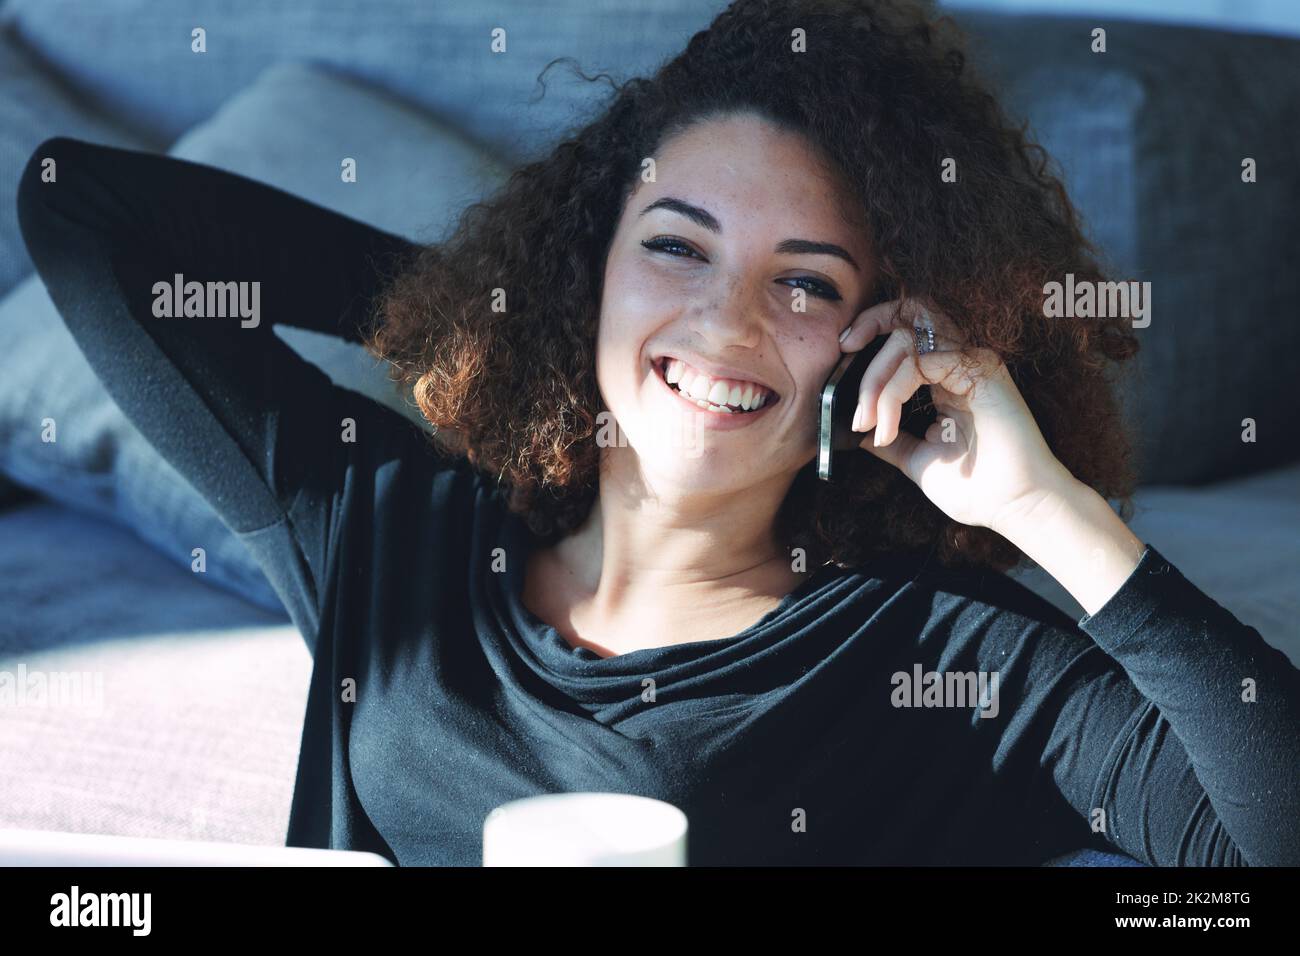 Fröhliche junge Frau, die auf ihrem Handy lacht und lächelt Stockfoto